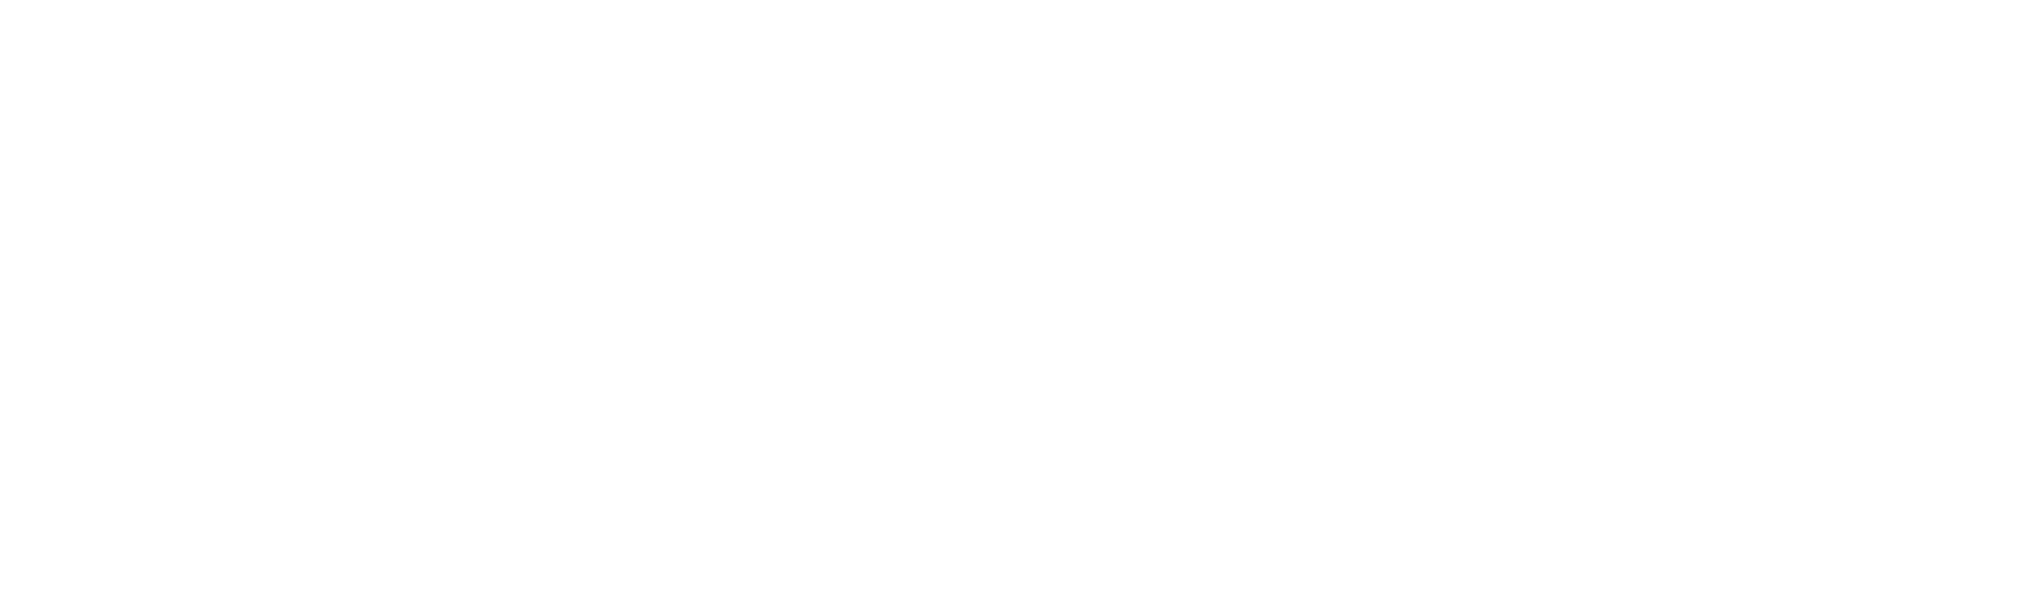 Certyfikat ISO 9001 | Akredytowana Certyfikacja | ISOQAR